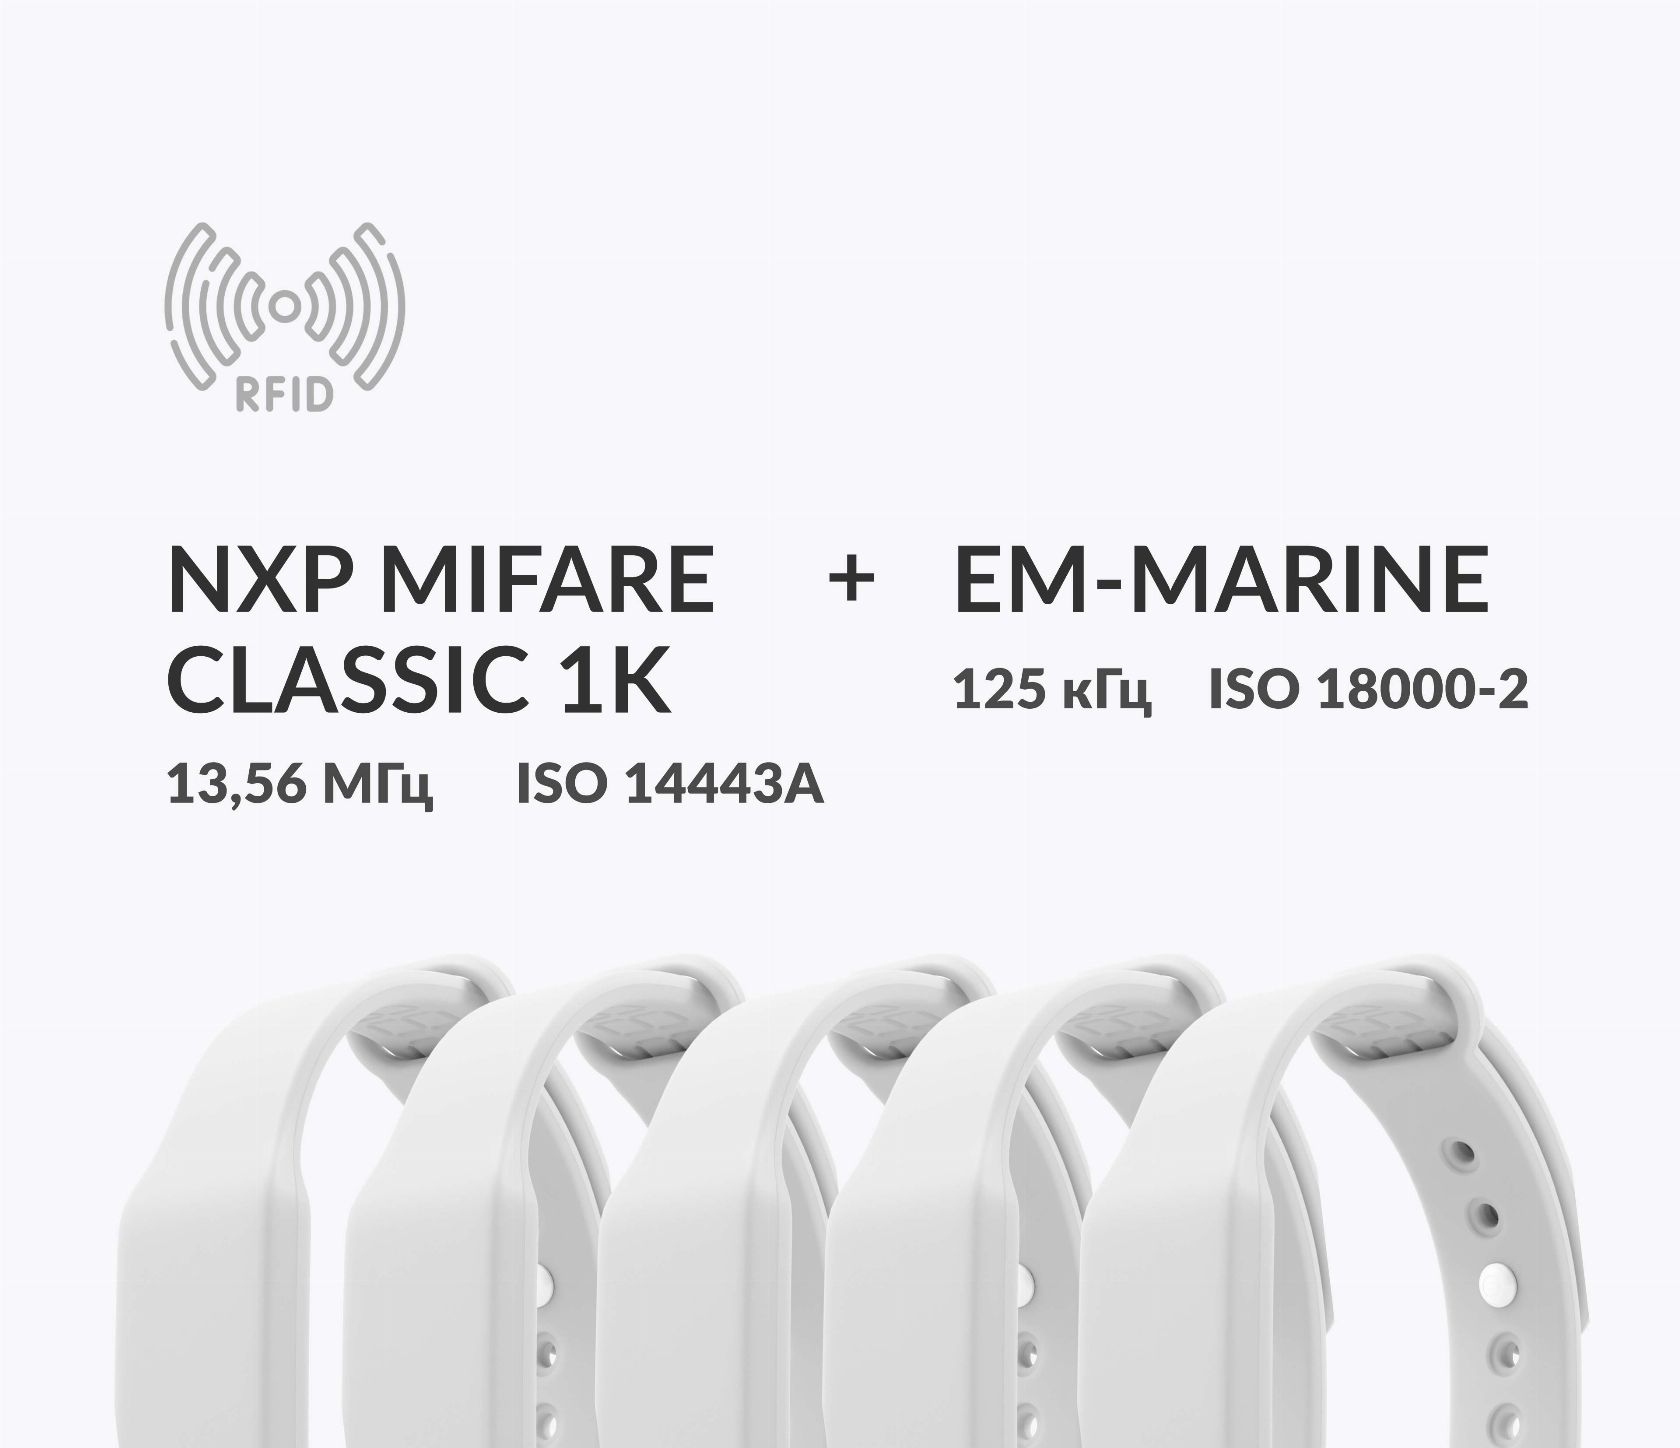 Дуальные силиконовые RFID-браслеты с двумя чипами NXP MIFARE Classic 1k + EM-Marine Дуальные силиконовые RFID-браслеты с двумя чипами NXP MIFARE Classic 1k + EM-Marine